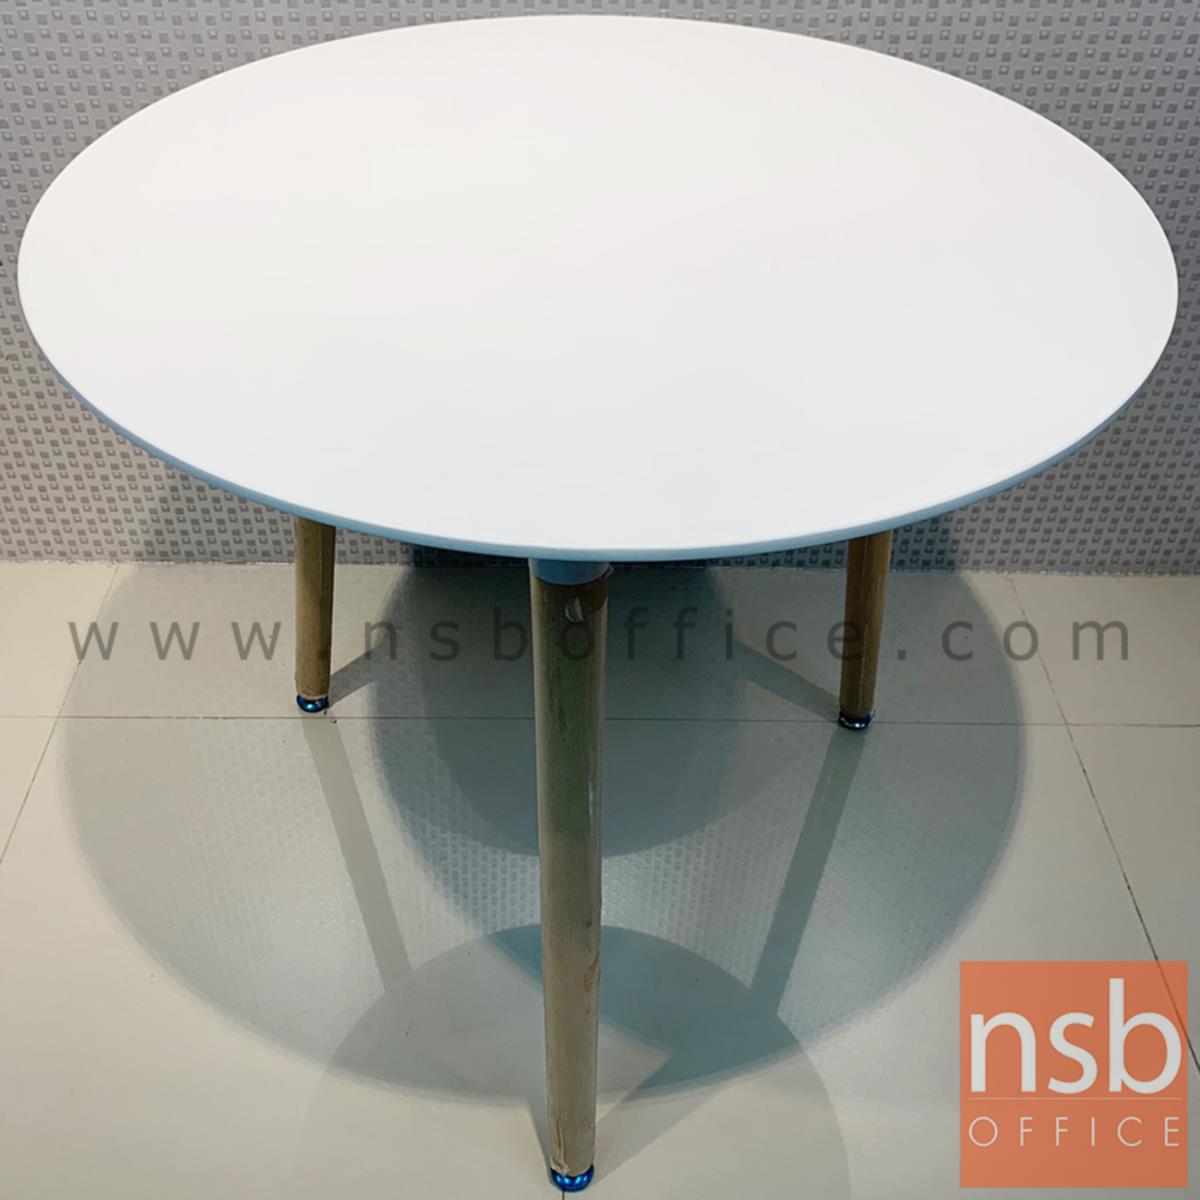 โต๊ะหน้าไม้ MDF รุ่น Shannon (แชนนอน) ขนาด 60W ,80Di cm. ขาไม้สีบีช